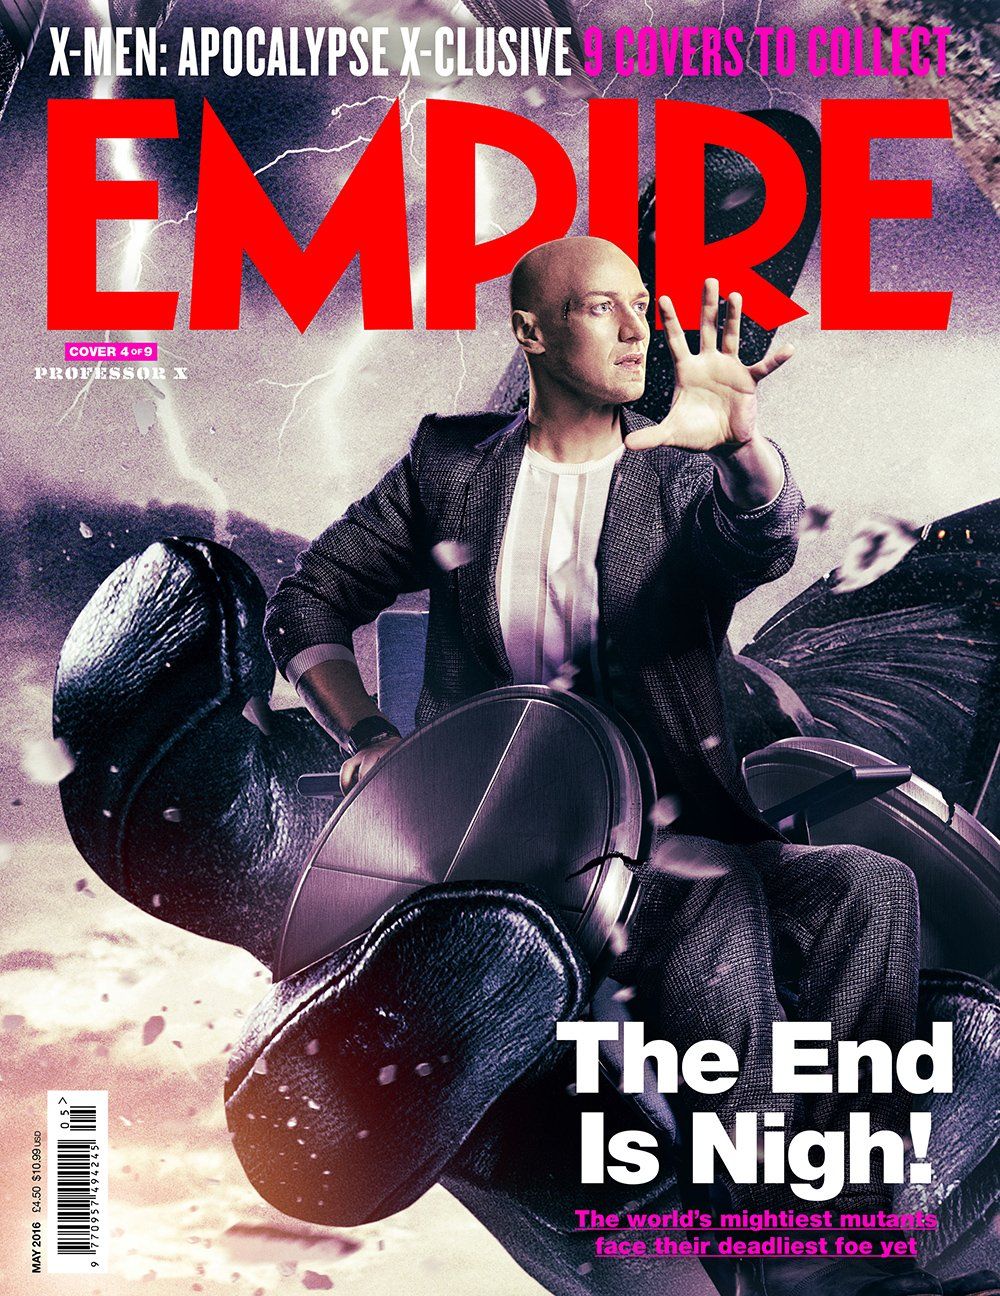 X-Men: Apocalypse magazine cover - Professor X